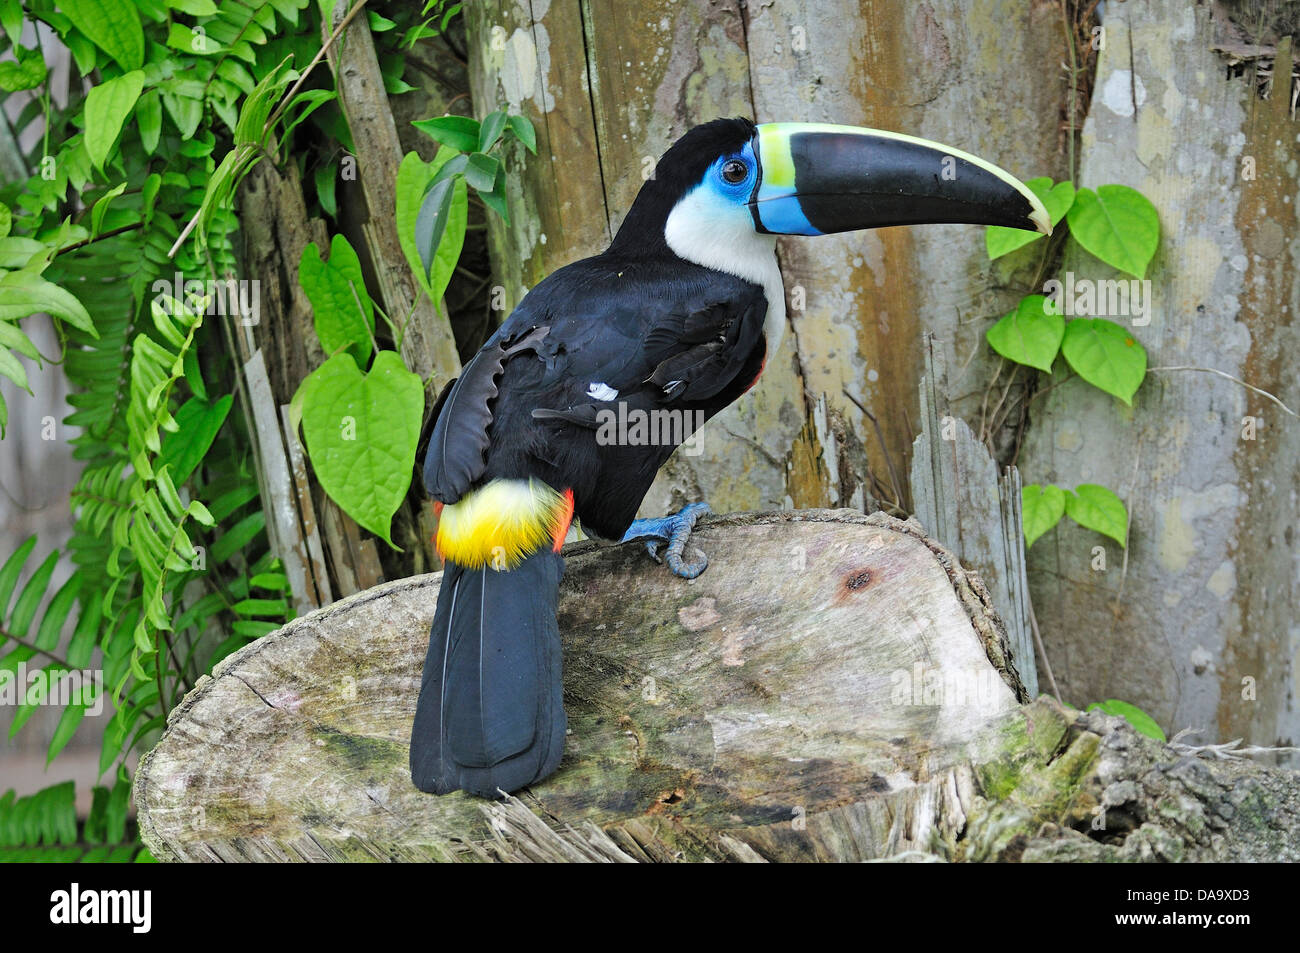 América del Sur, Perú, Amazon, Ramphastos vitellinus tucán, Tucano, Bird, pico, colorido, Foto de stock